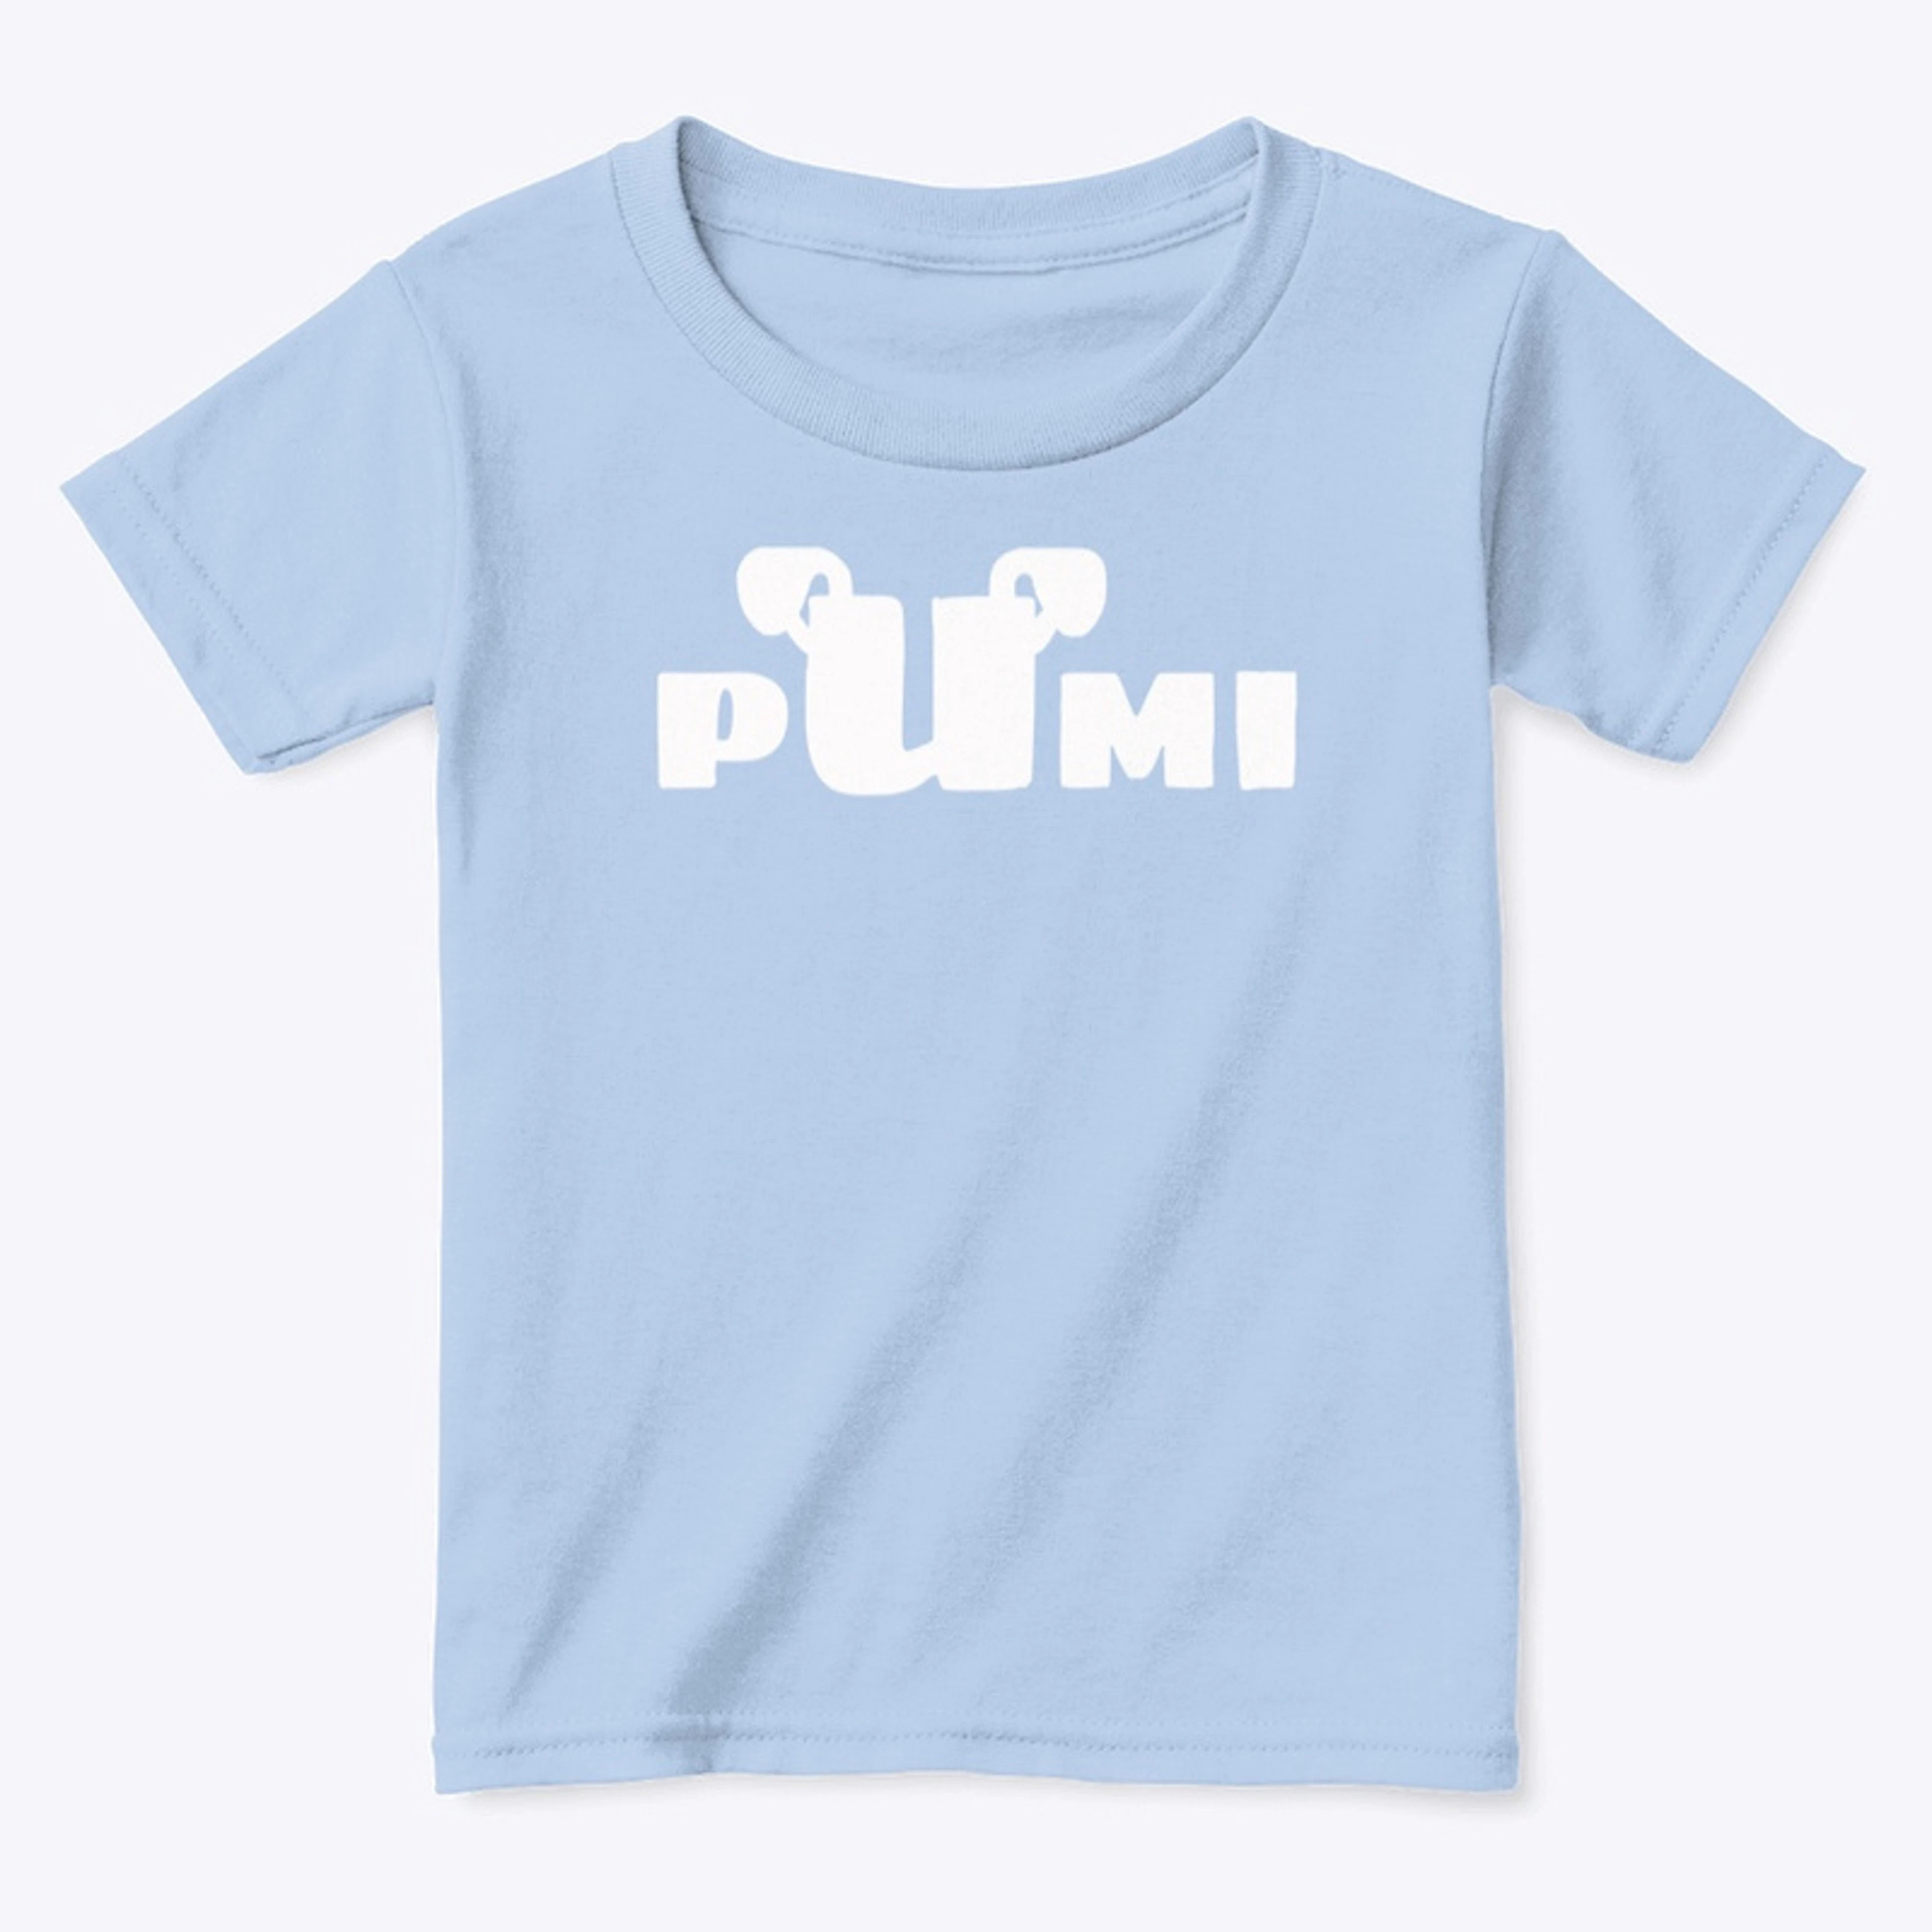 Kids Pumi shirts